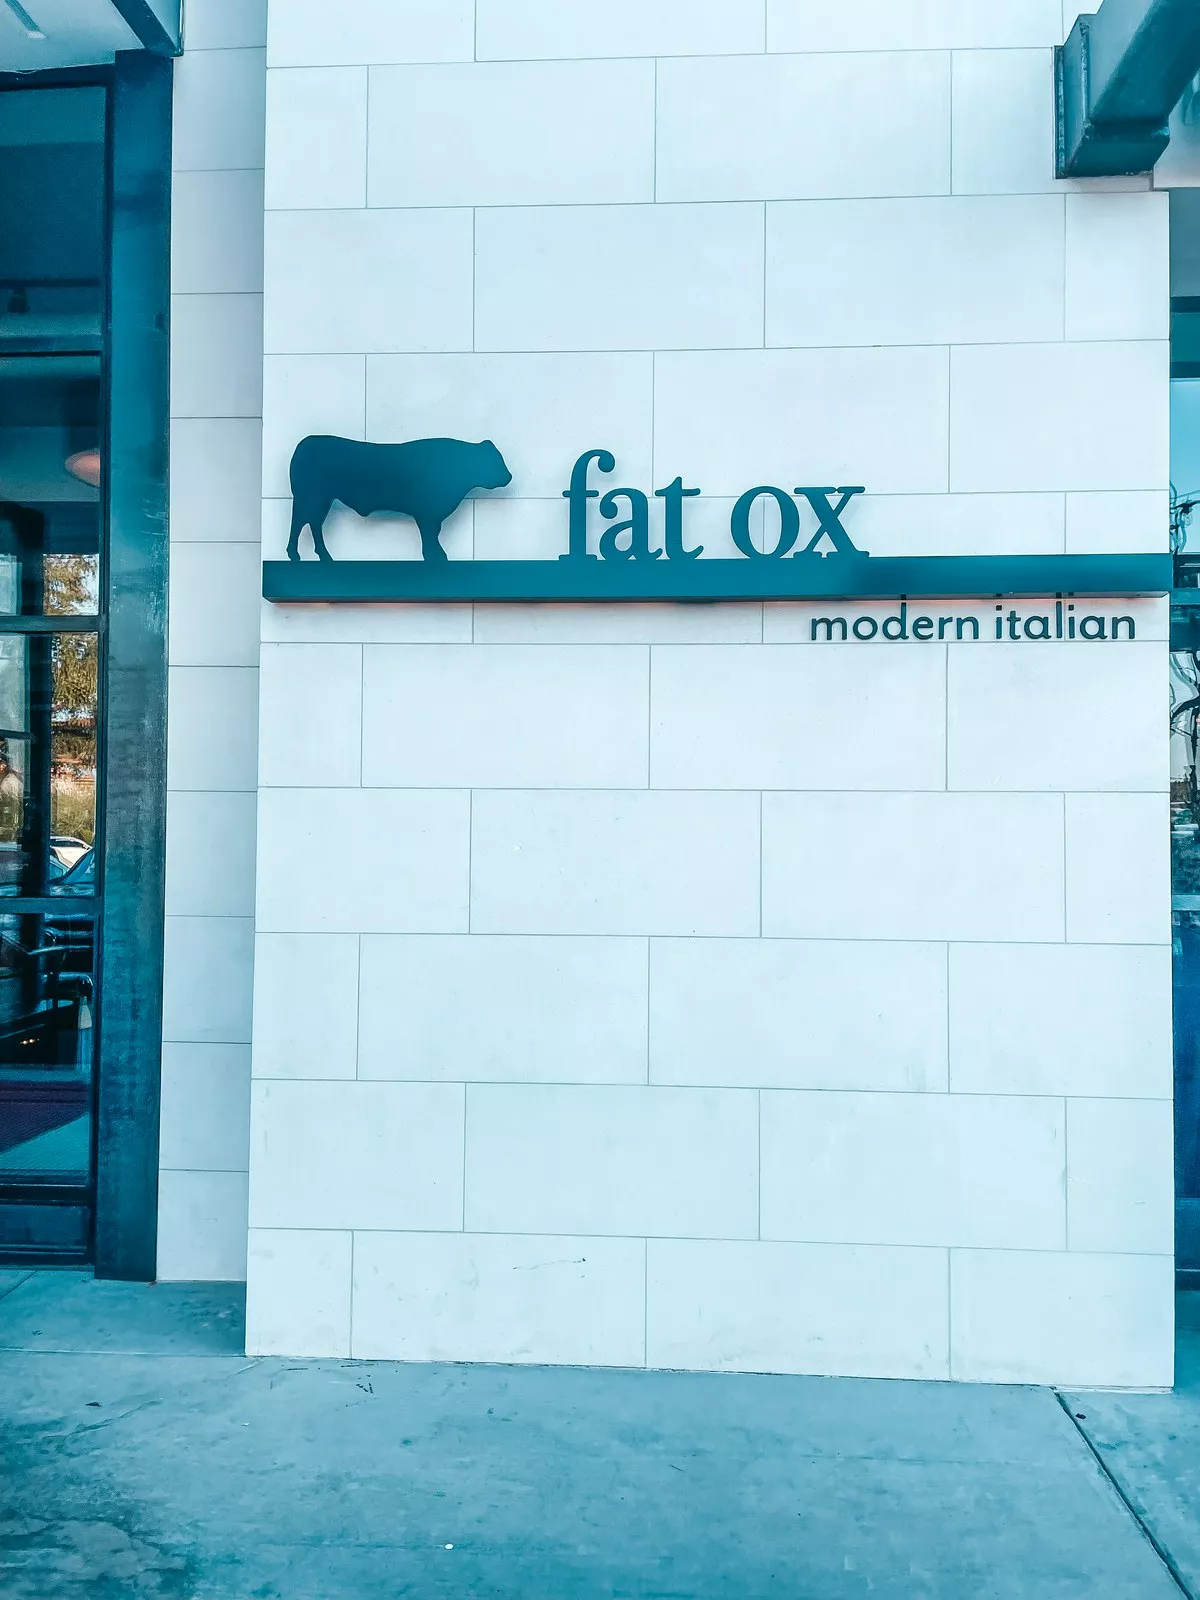 Fat Ox modern Italian restaurant in Scottsdale